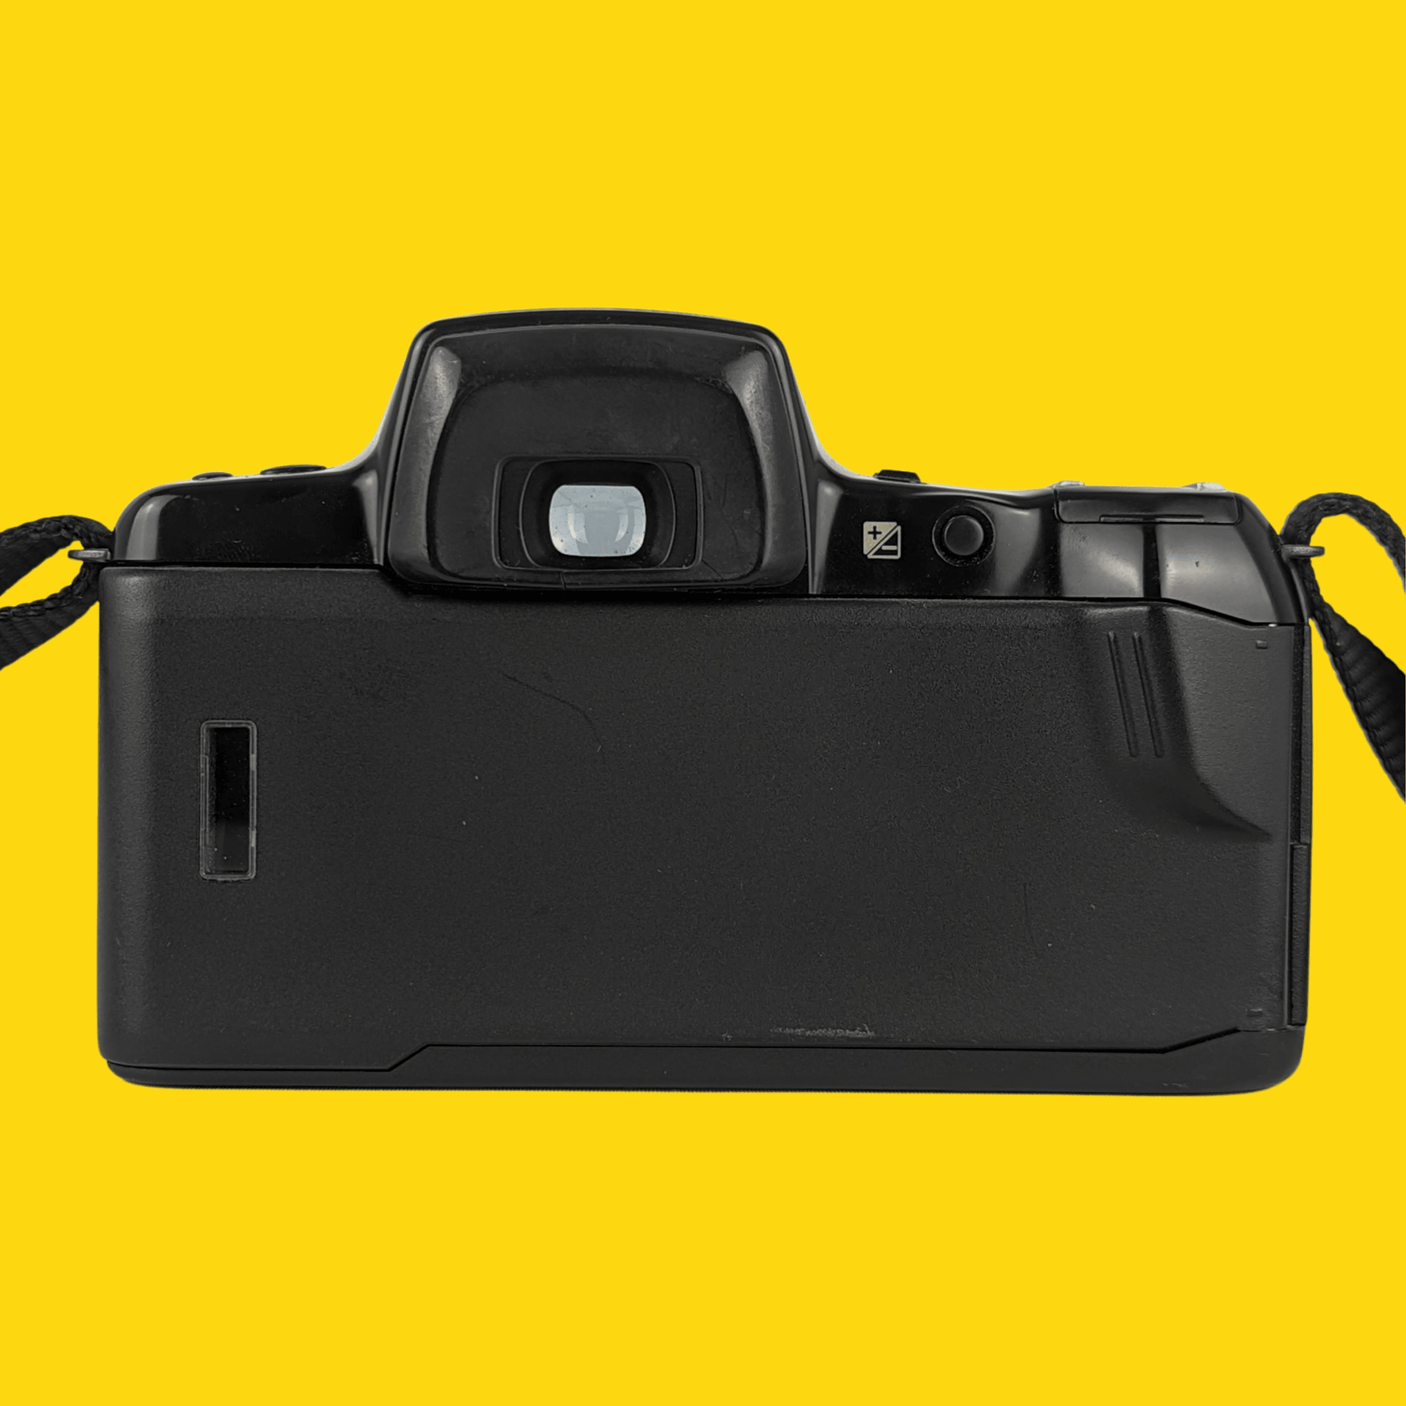 Pentax Z-20 35mm SLR Film Camera - Body Only